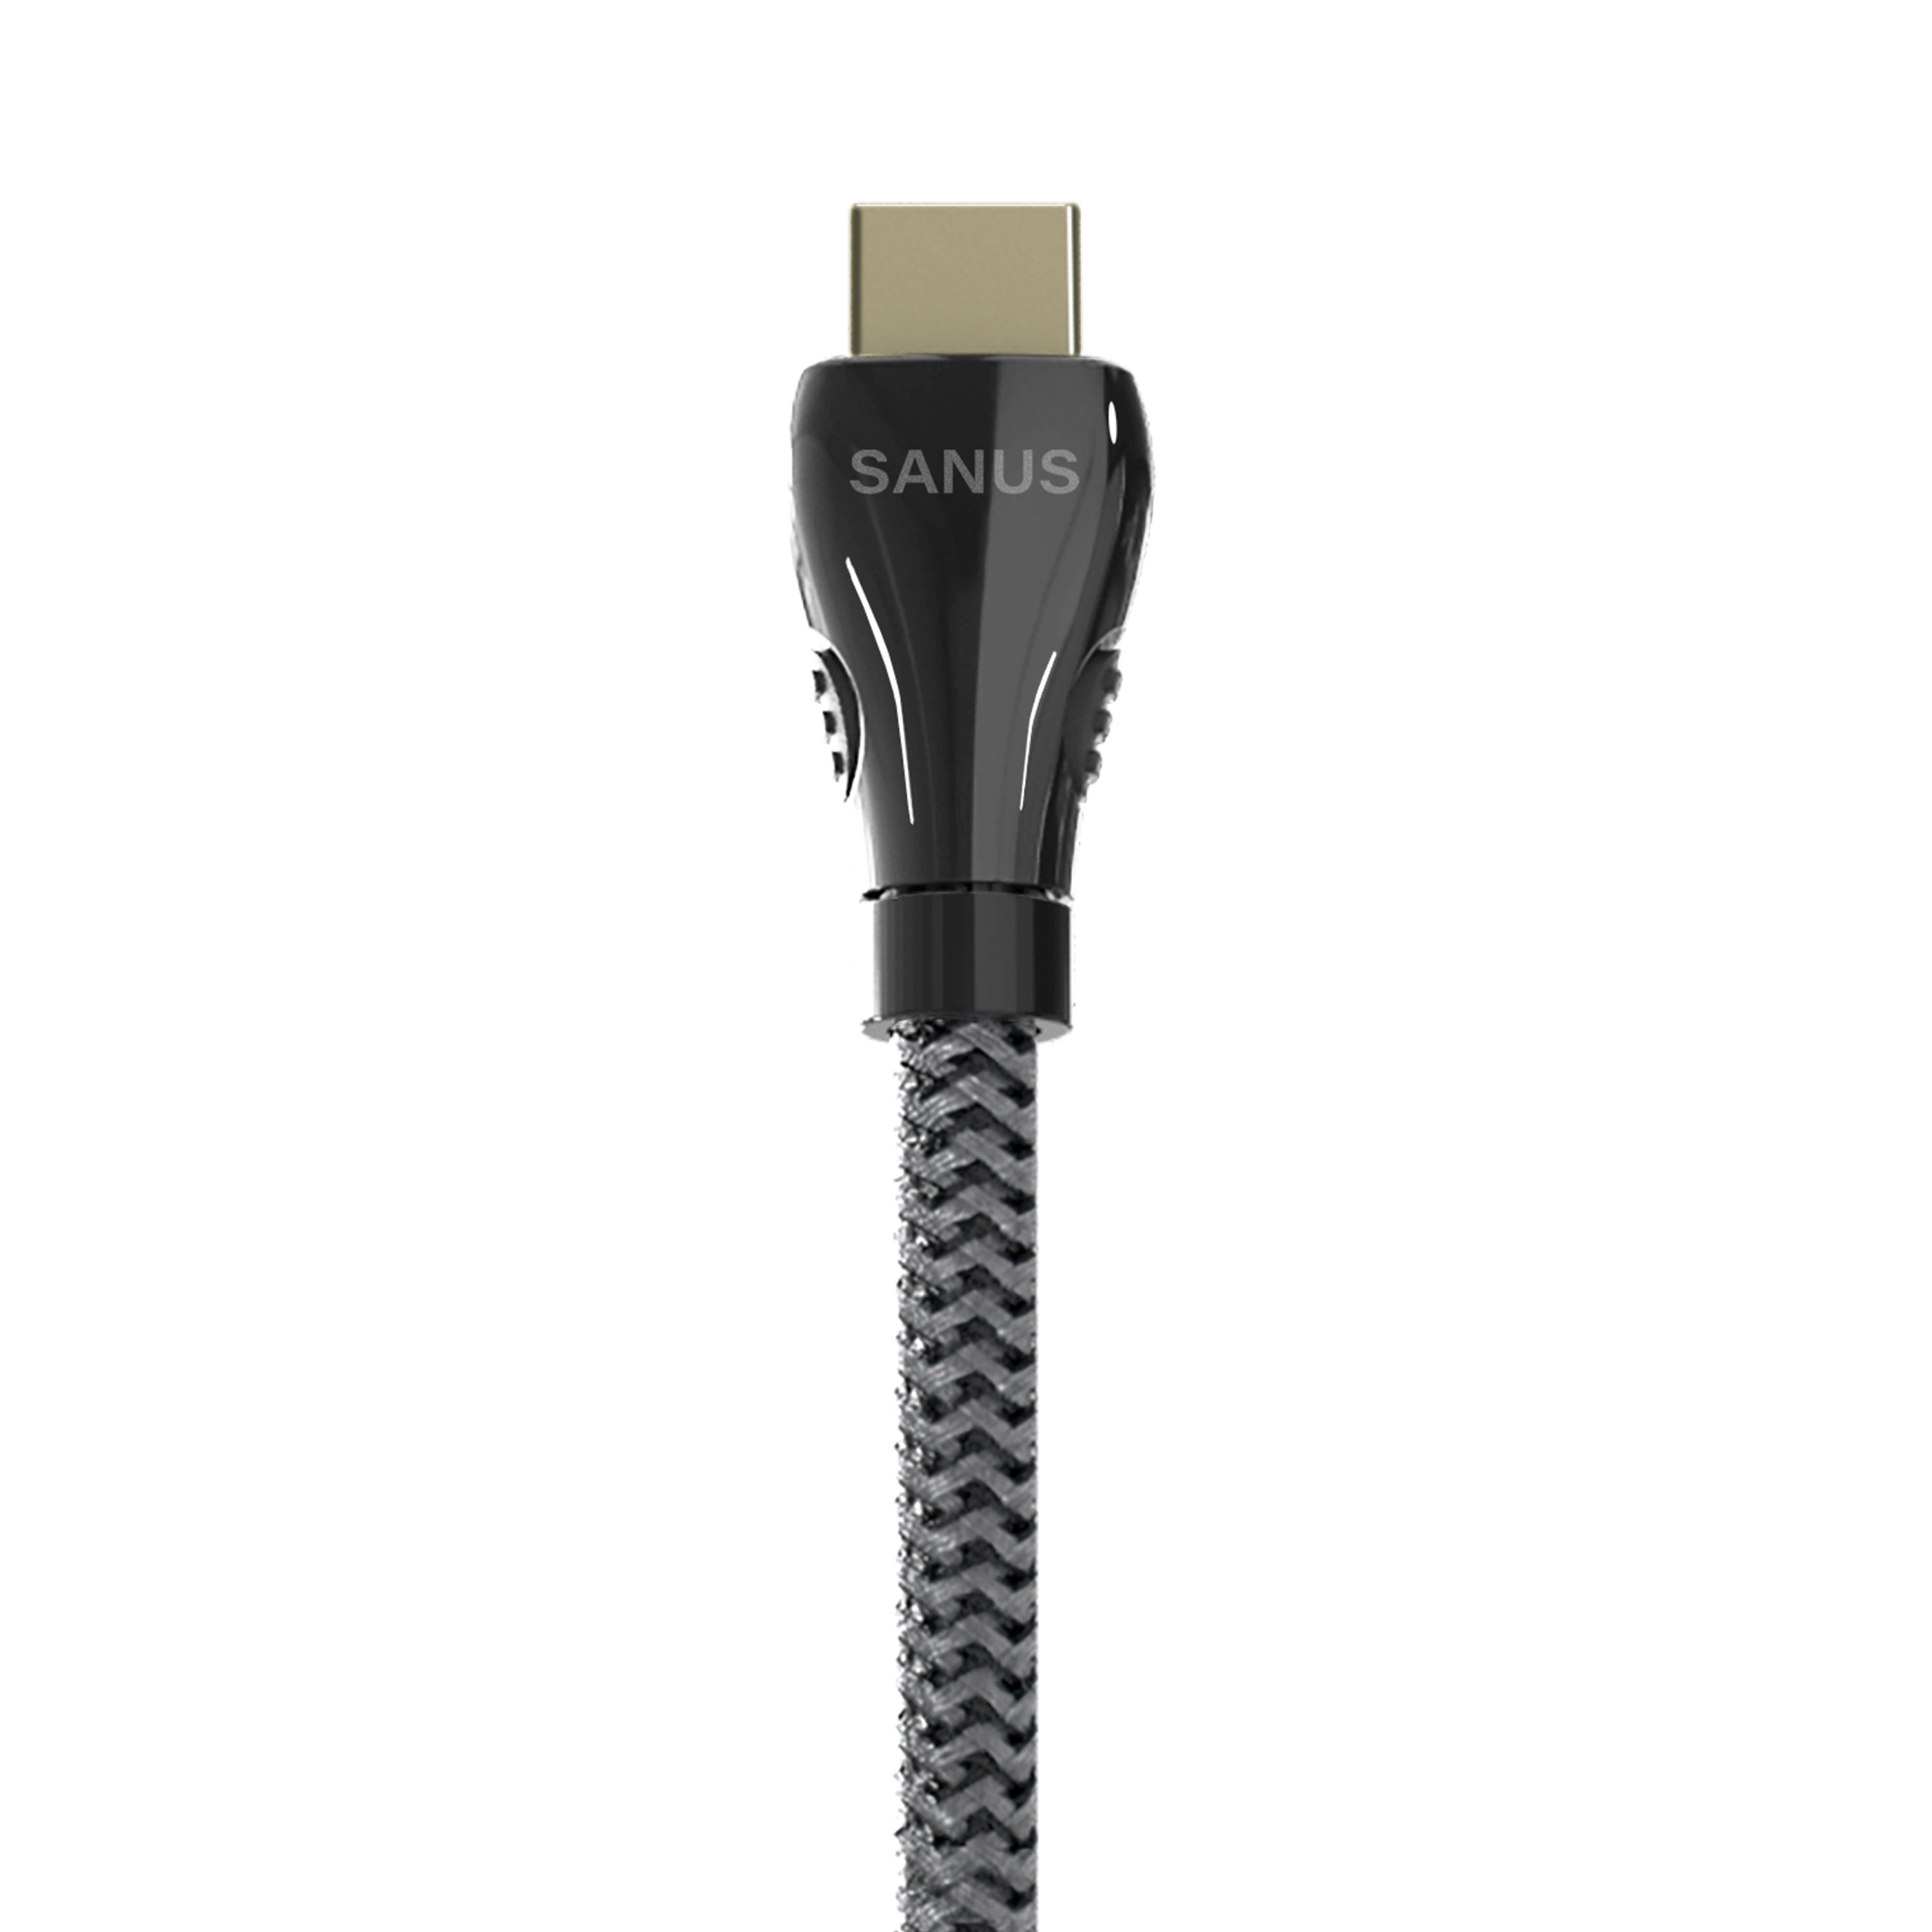 Proline HDMI cable - 25 ft - HDMI2HDMI25F-PRO - Audio & Video Cables 